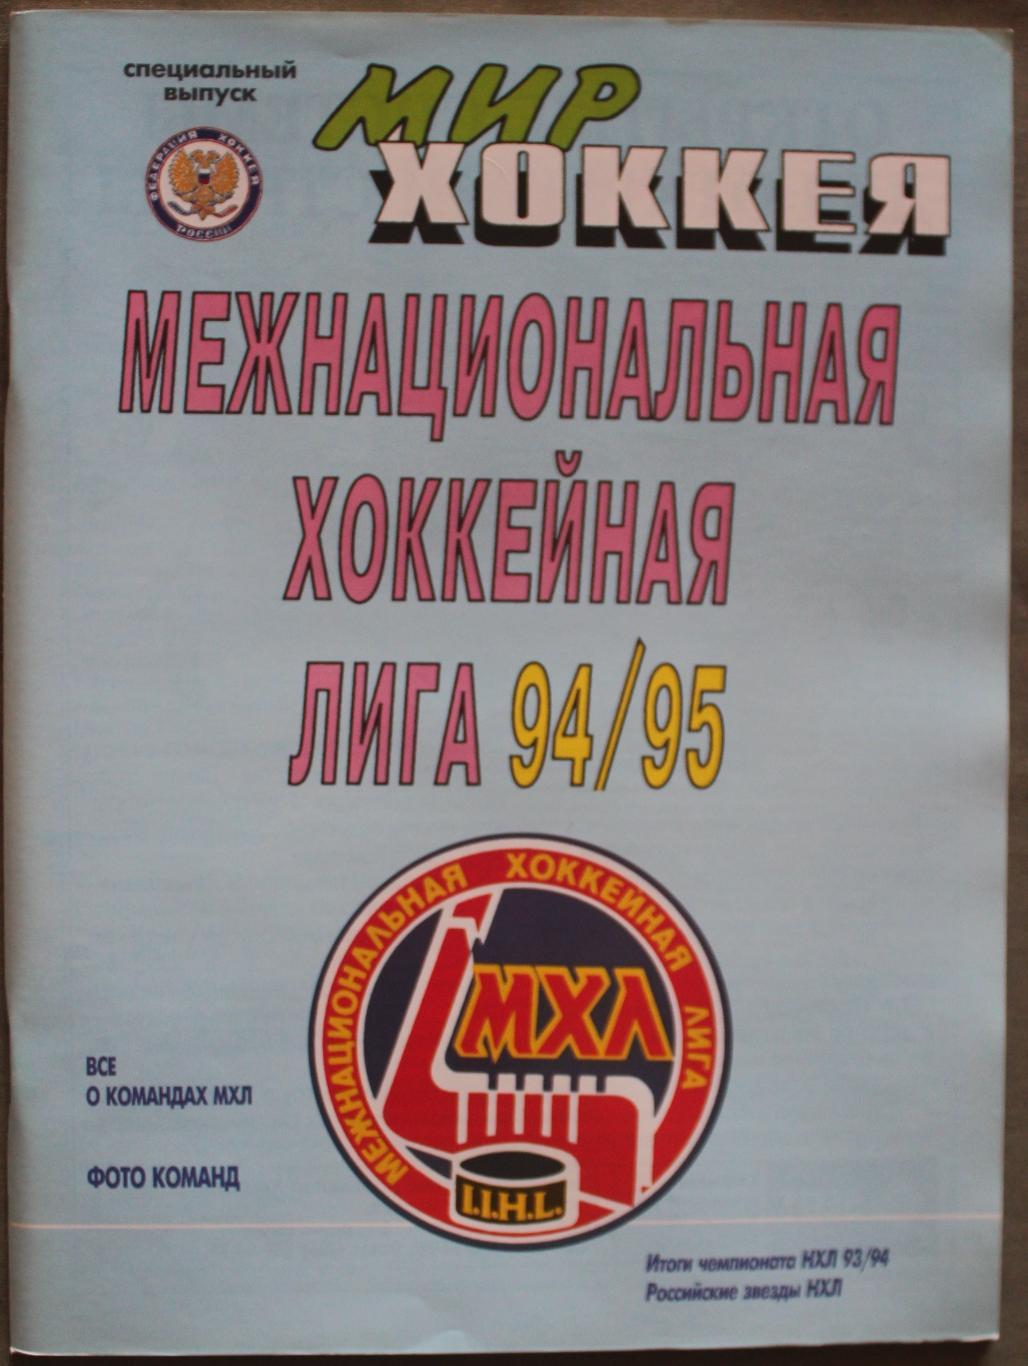 Межнациональная хоккейная лига 94/95 спецвыпуск Мир хоккея № 2 (4) 1995